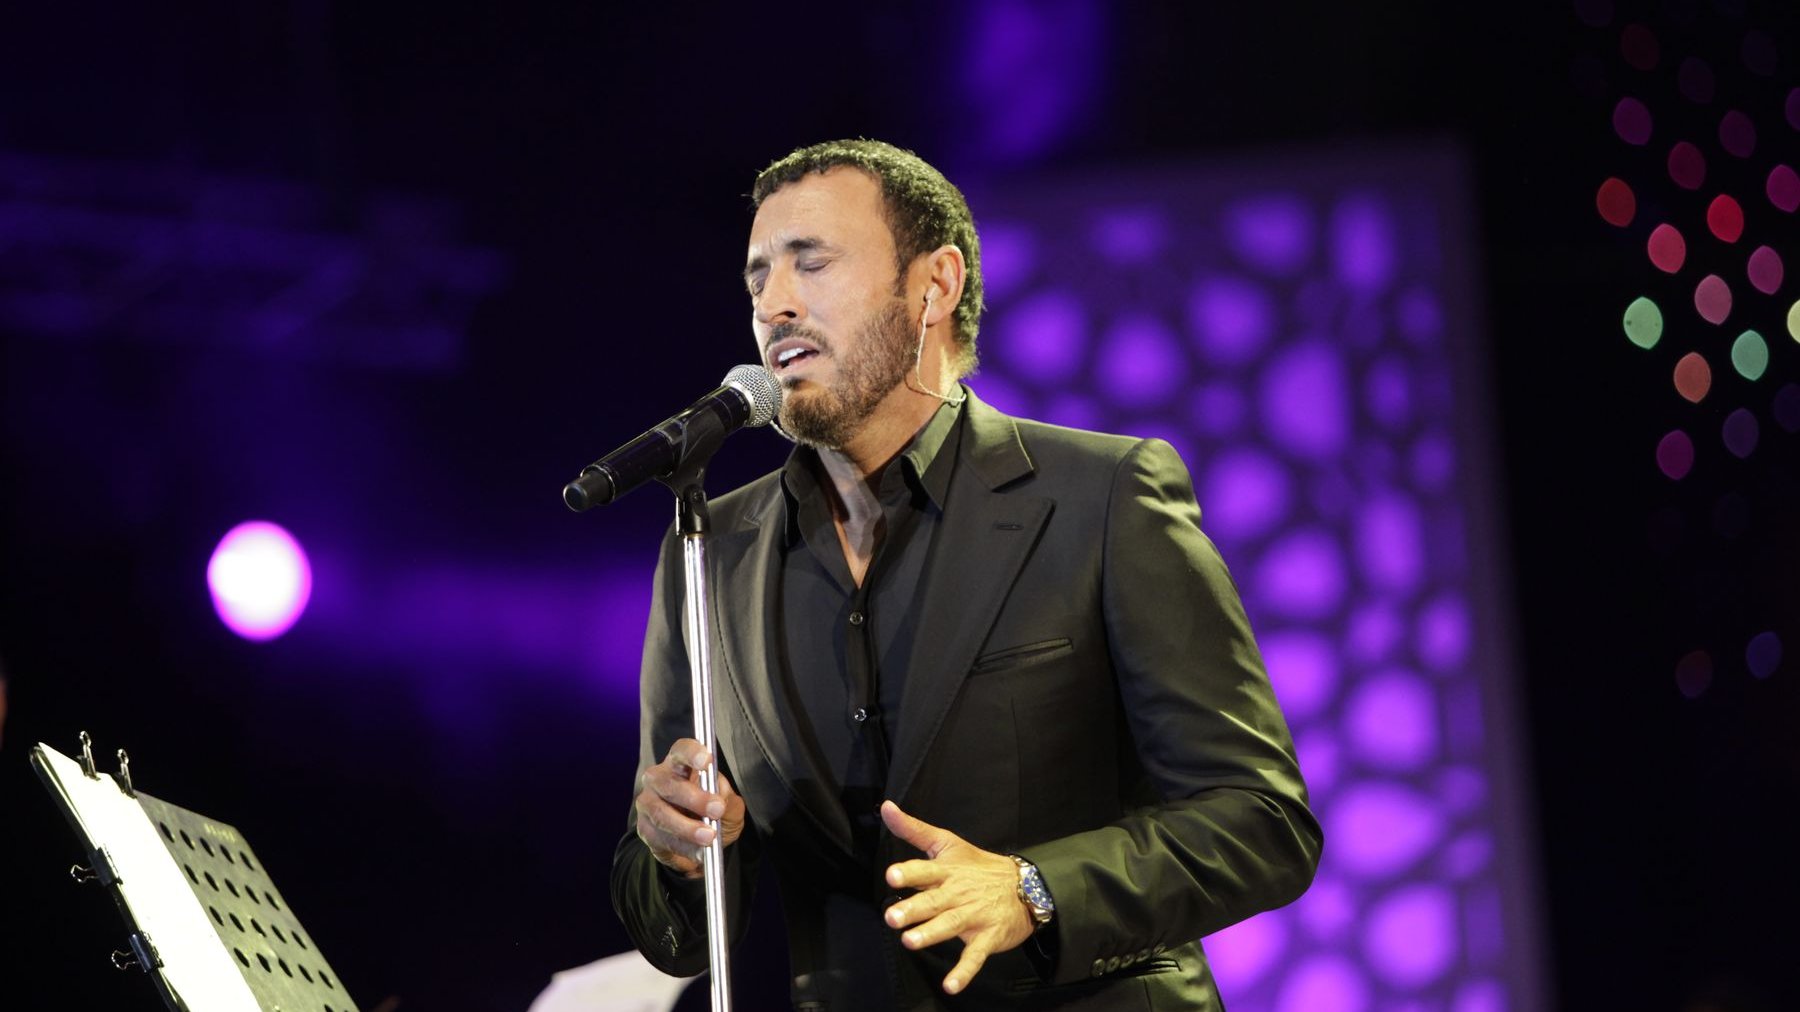 Il chante l'Irak. Un répertoire avec lequel il enchantera, avant Mawazine, le festival des Musiques sacrées de Fès. Et, en 2005, il se verra offrir la clé de la ville marocaine de Fès et deviendra le deuxième artiste, avec le grand artiste syrien Sabah Fakhri, à recevoir cet honneur.
